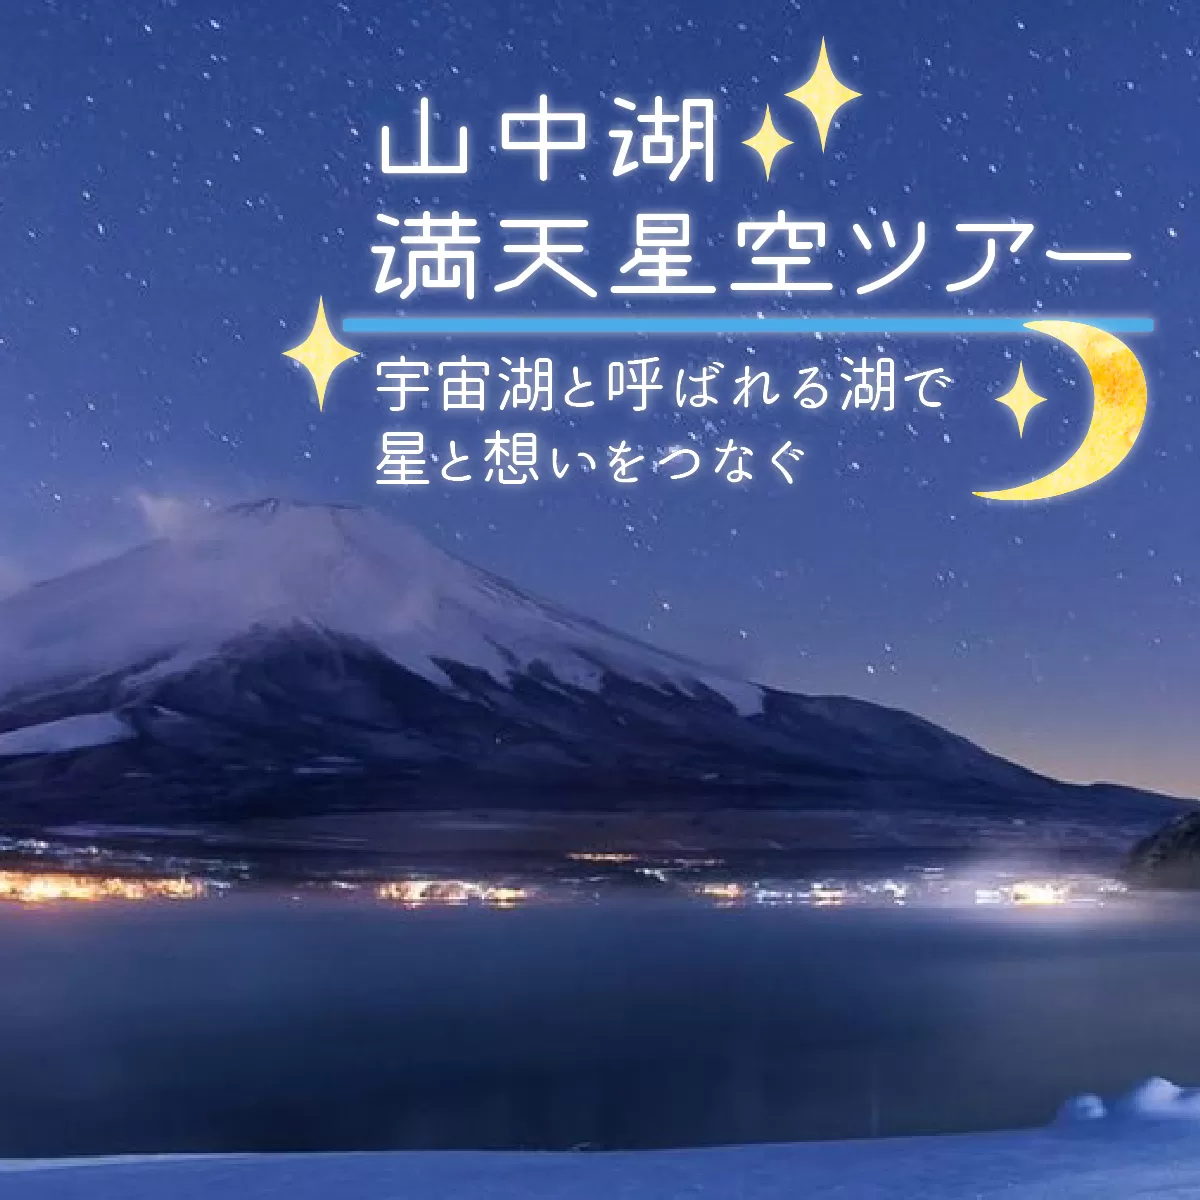 山中湖の満天星空ツアー 〜宇宙湖と呼ばれる湖で星と想いをつなぐ〜 YM013